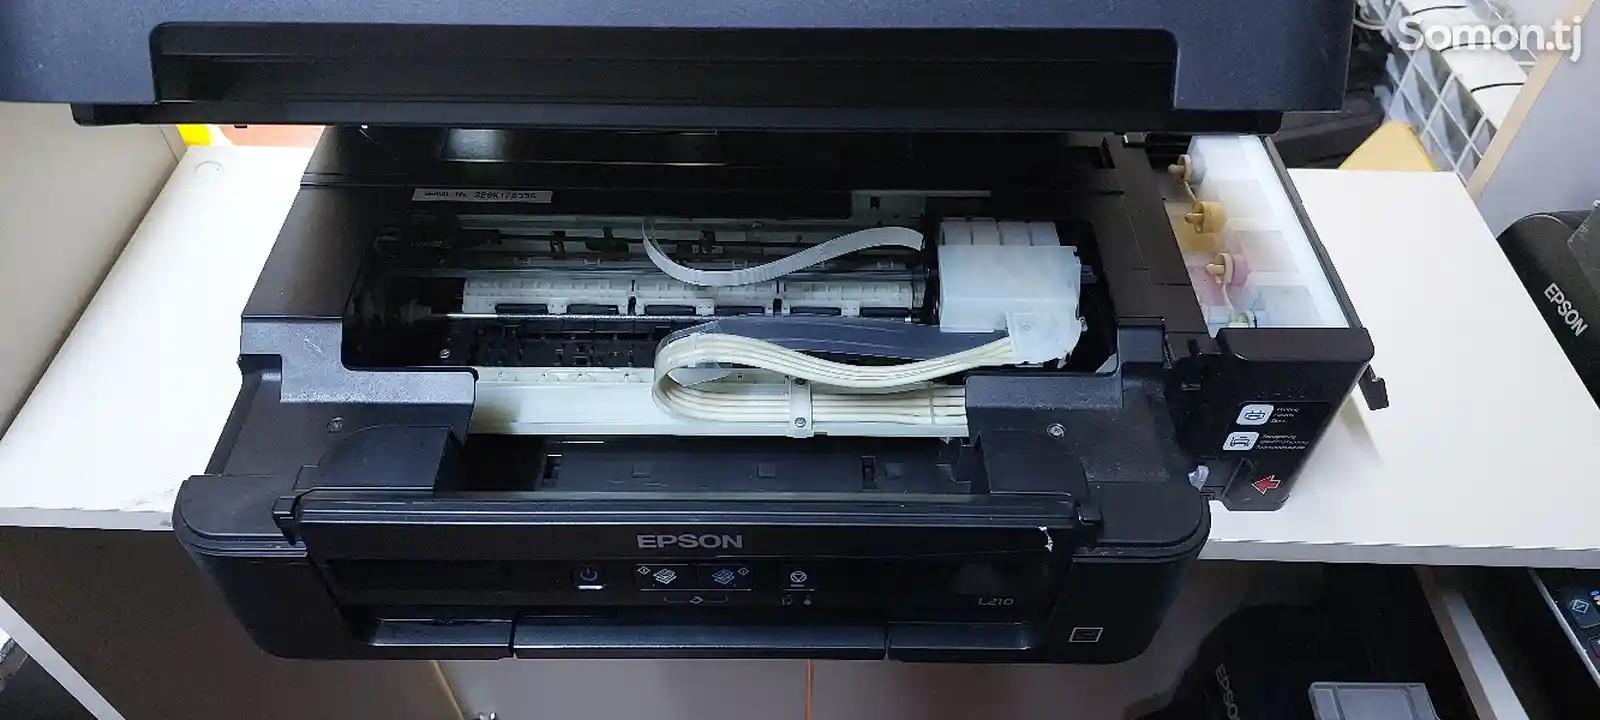 Принтер Epson l210 A4-3